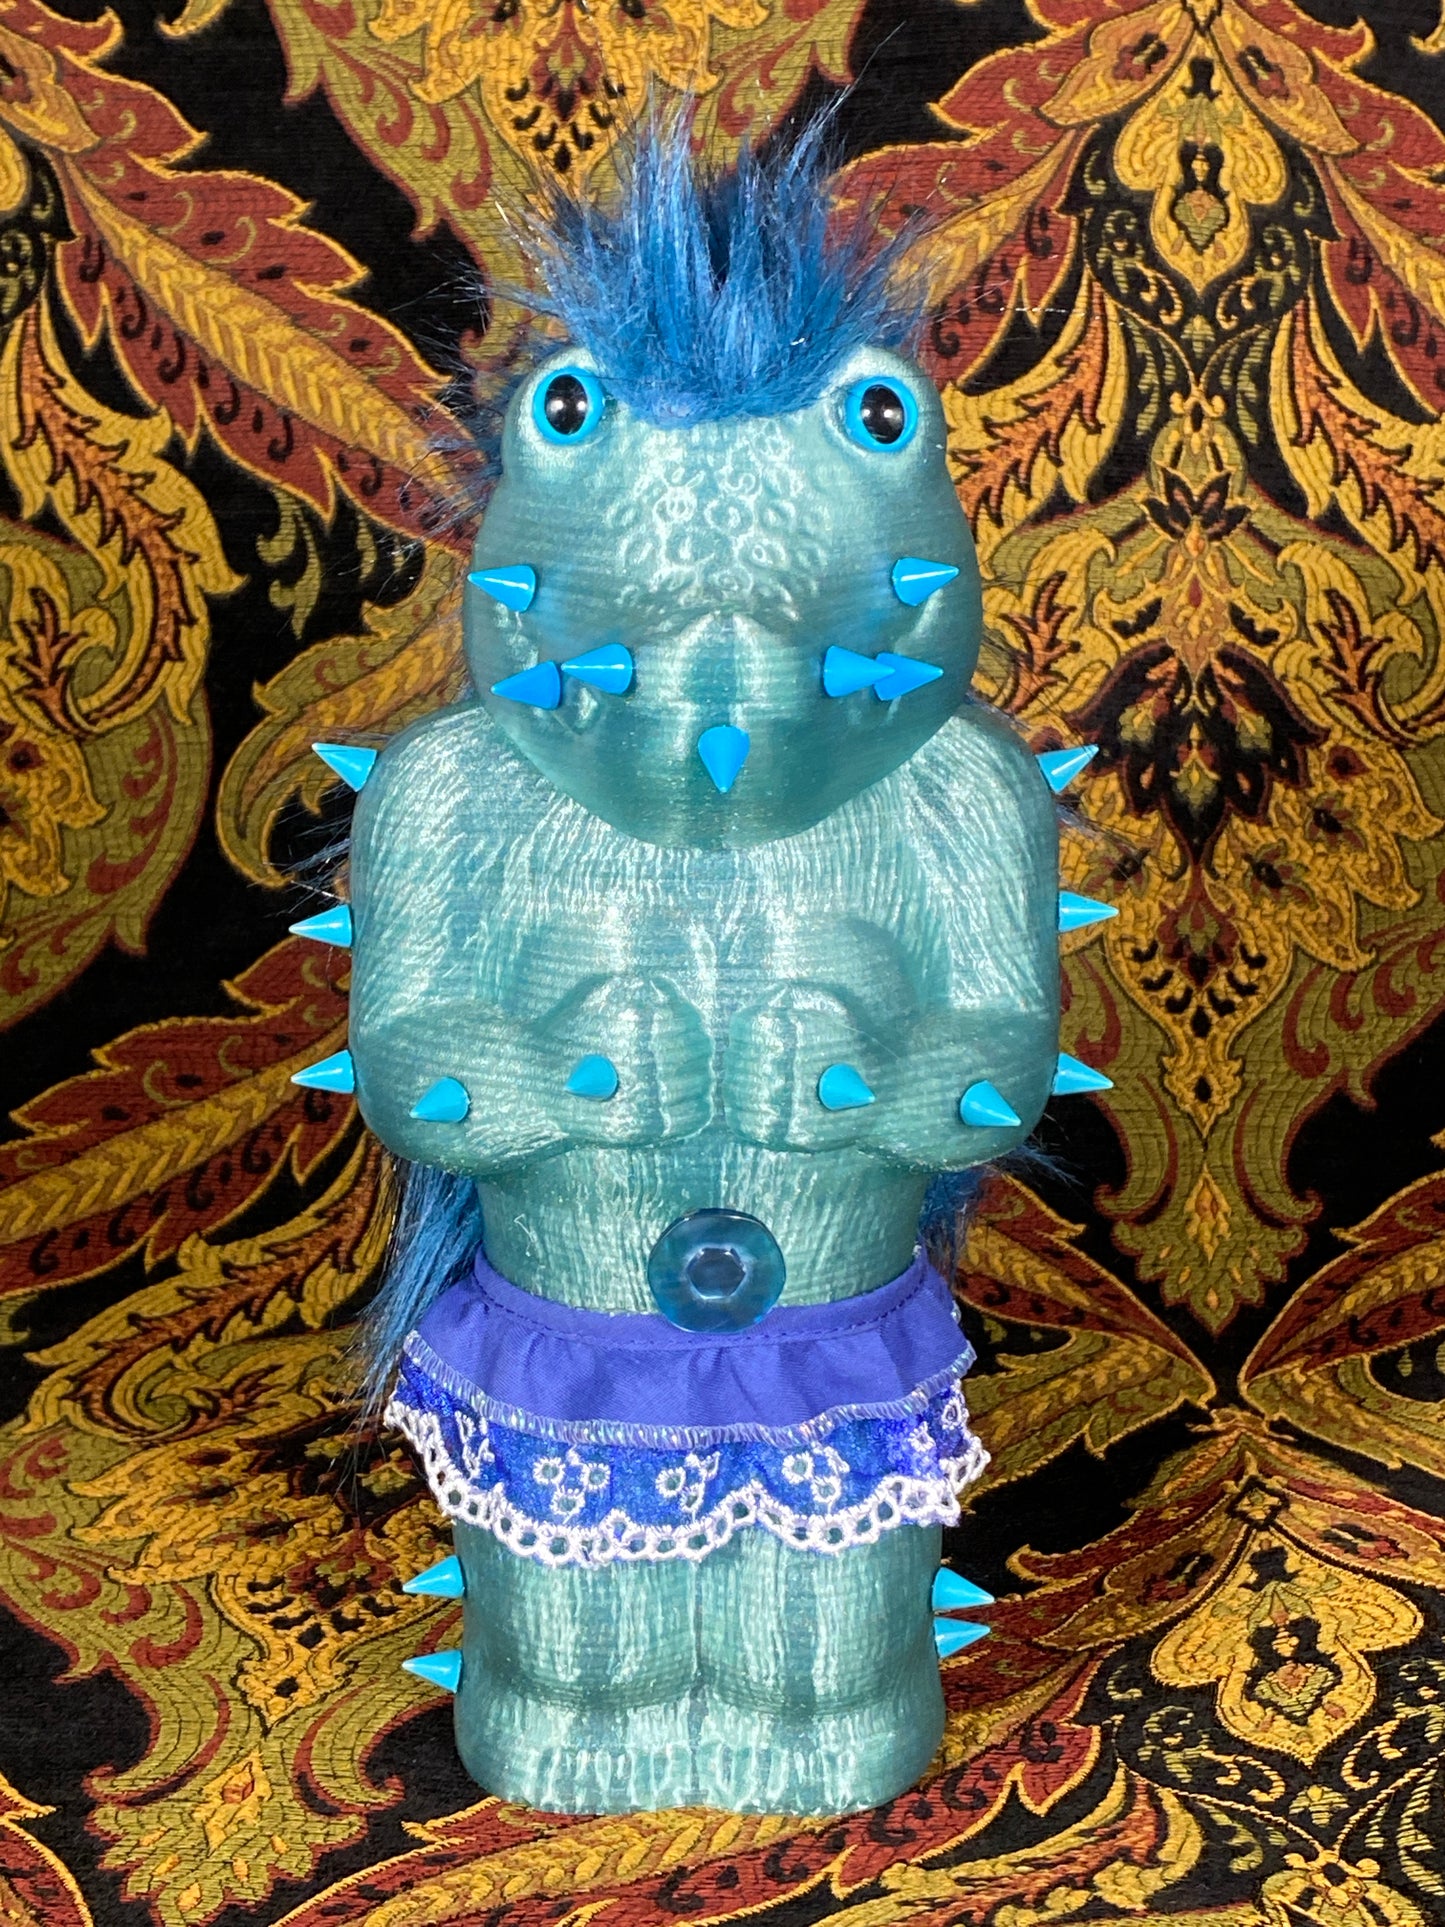 Crocodile Ape Cult: Frilly Blue Worshipper